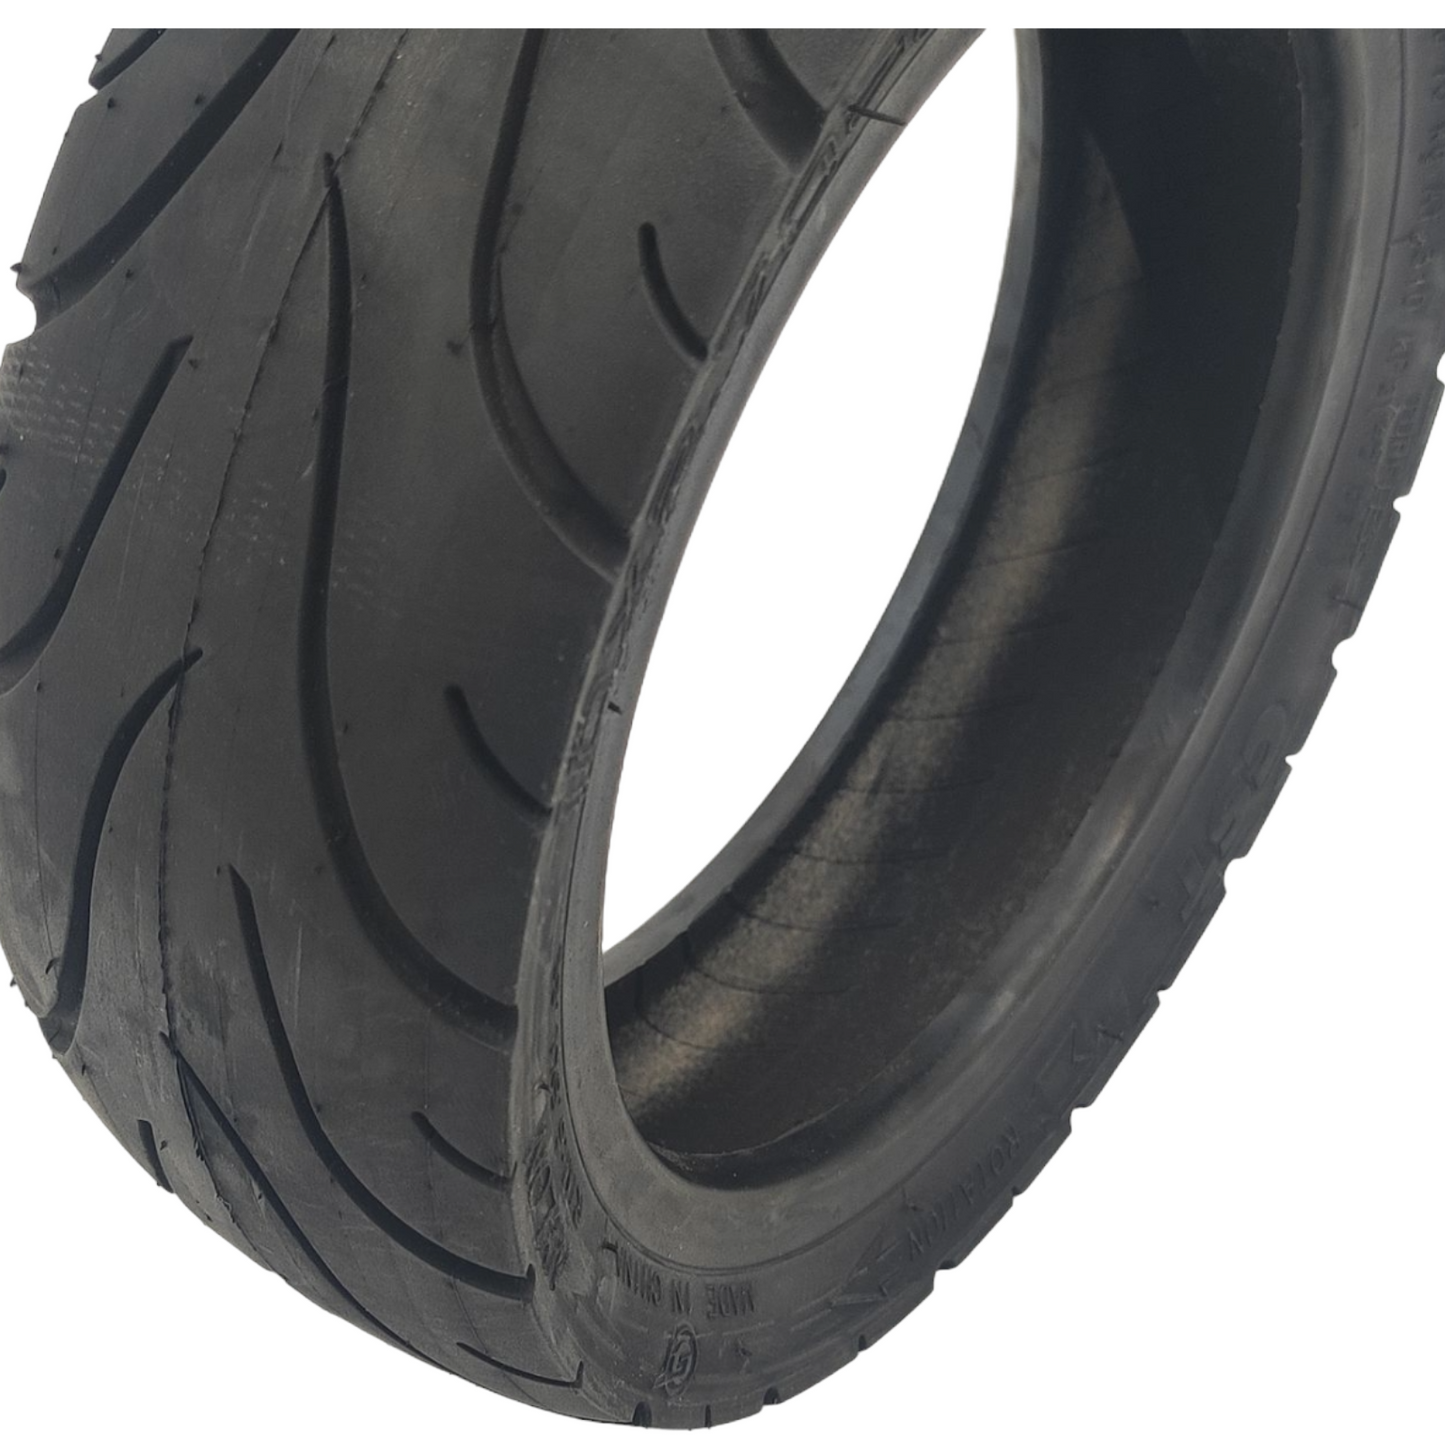 CST Reifen 10x2.7-6.5 Tubeless ohne Gelschicht mit Ventil